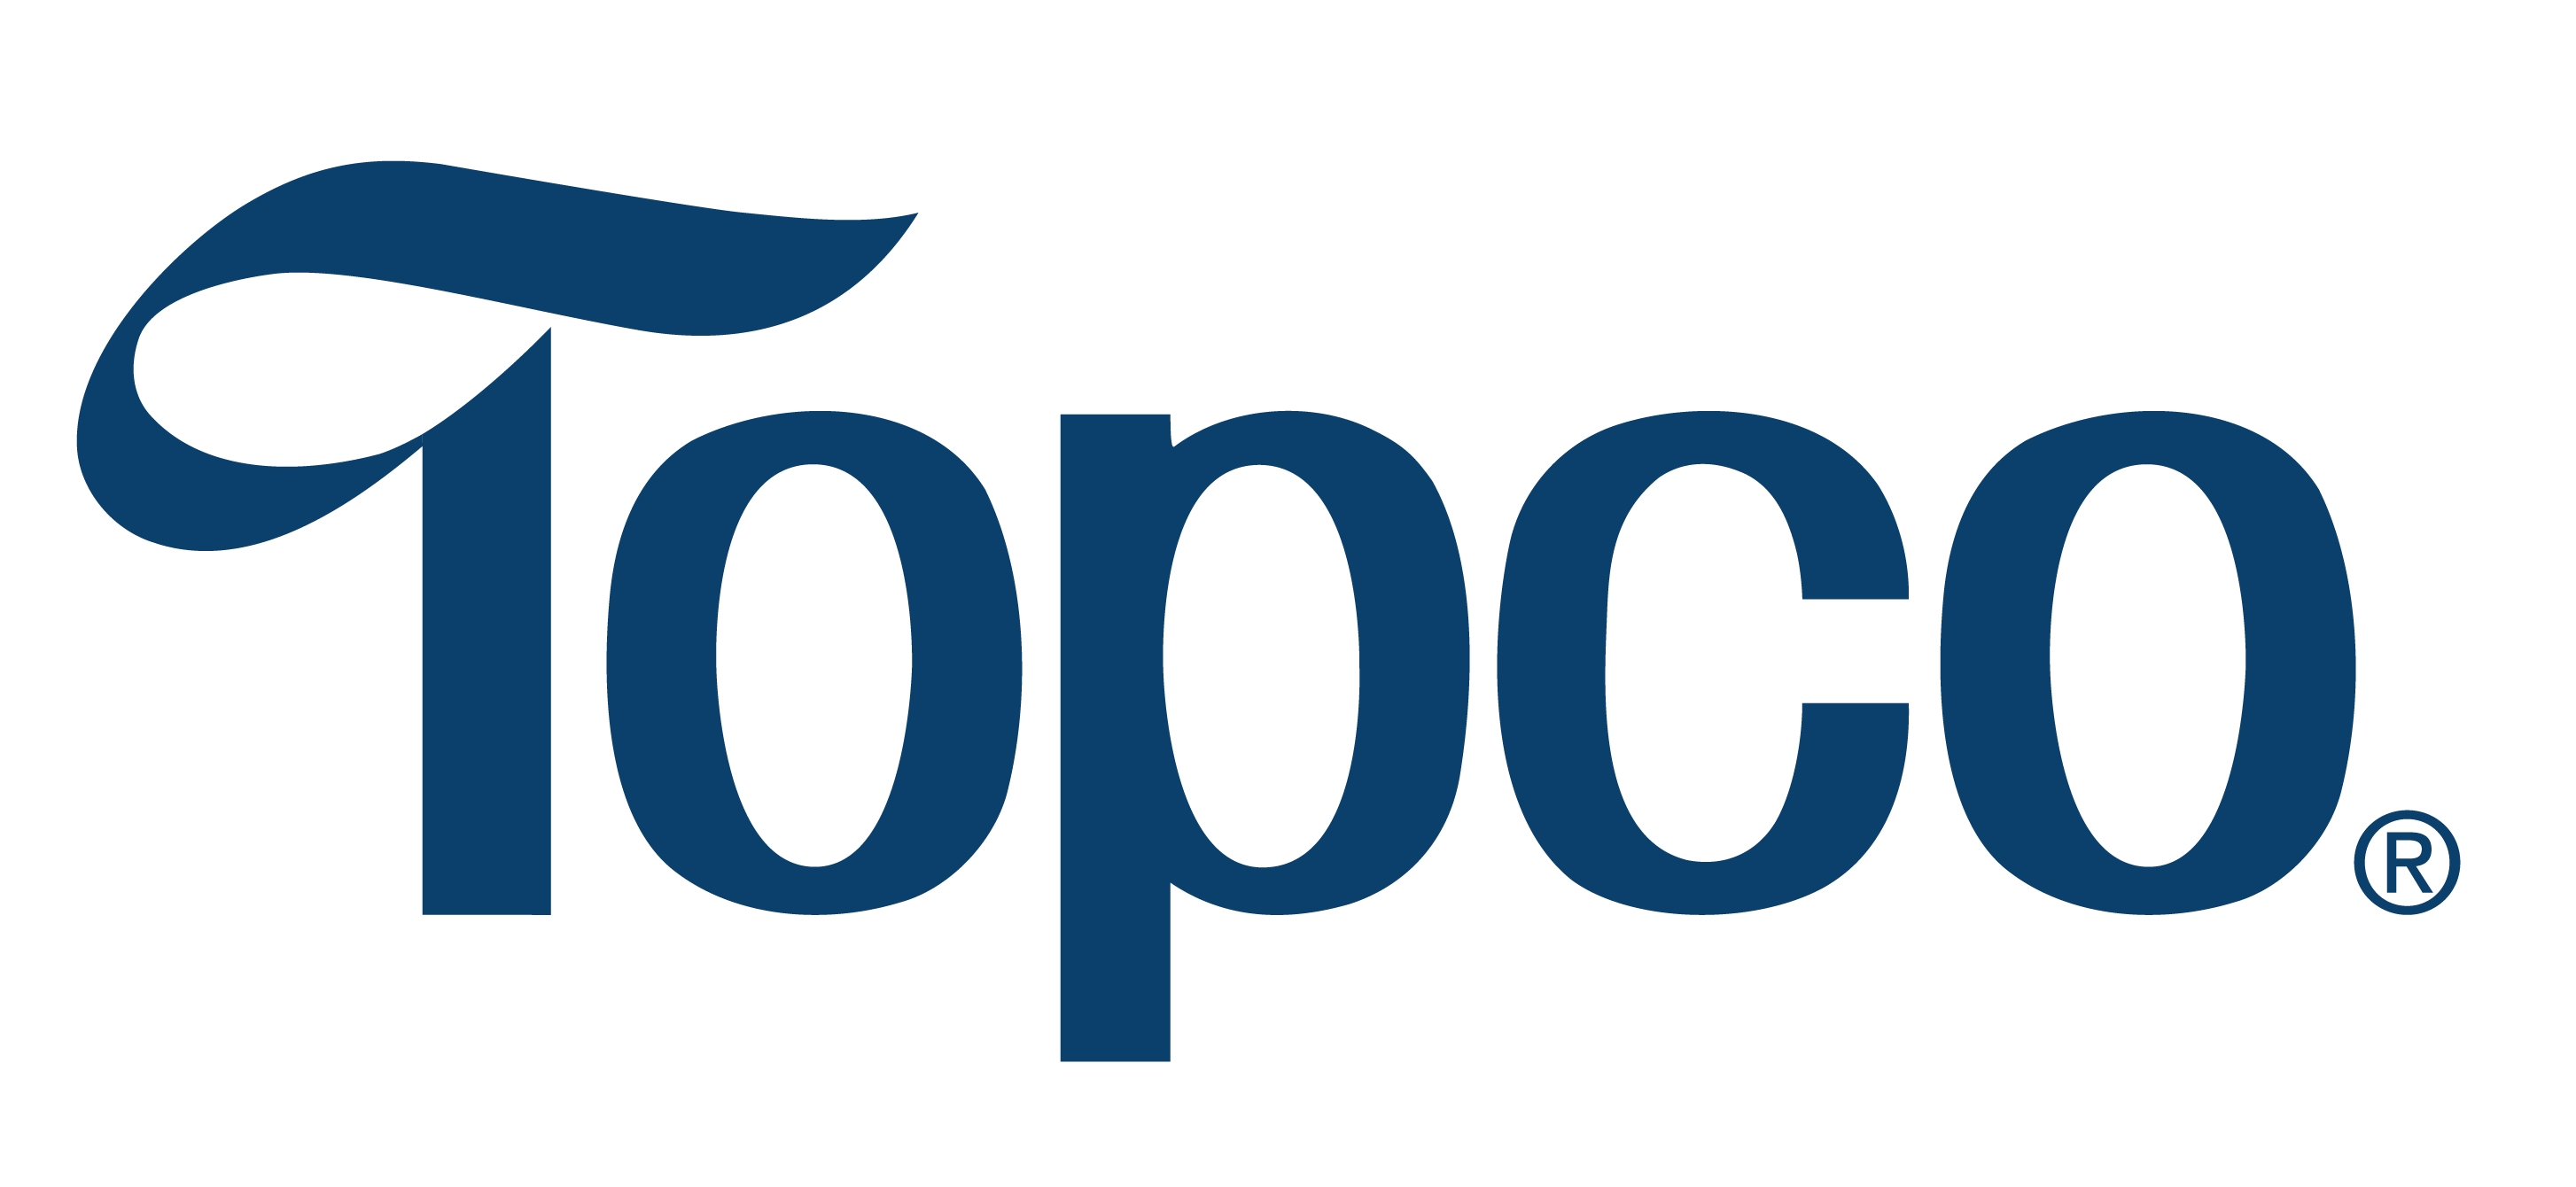 Topco Associates LLC